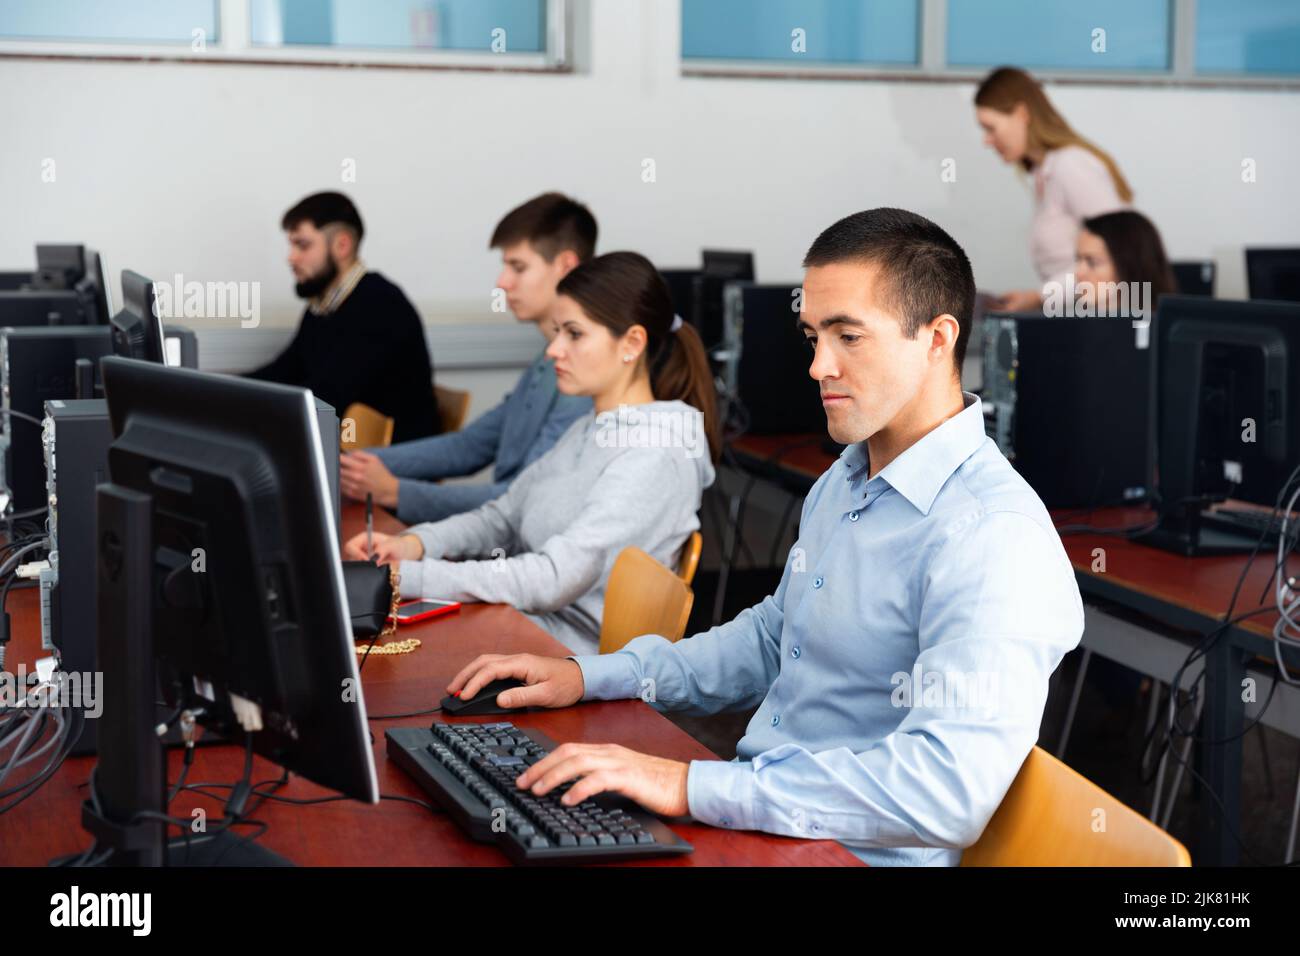 Cours d'informatique pour adultes en classe Banque D'Images